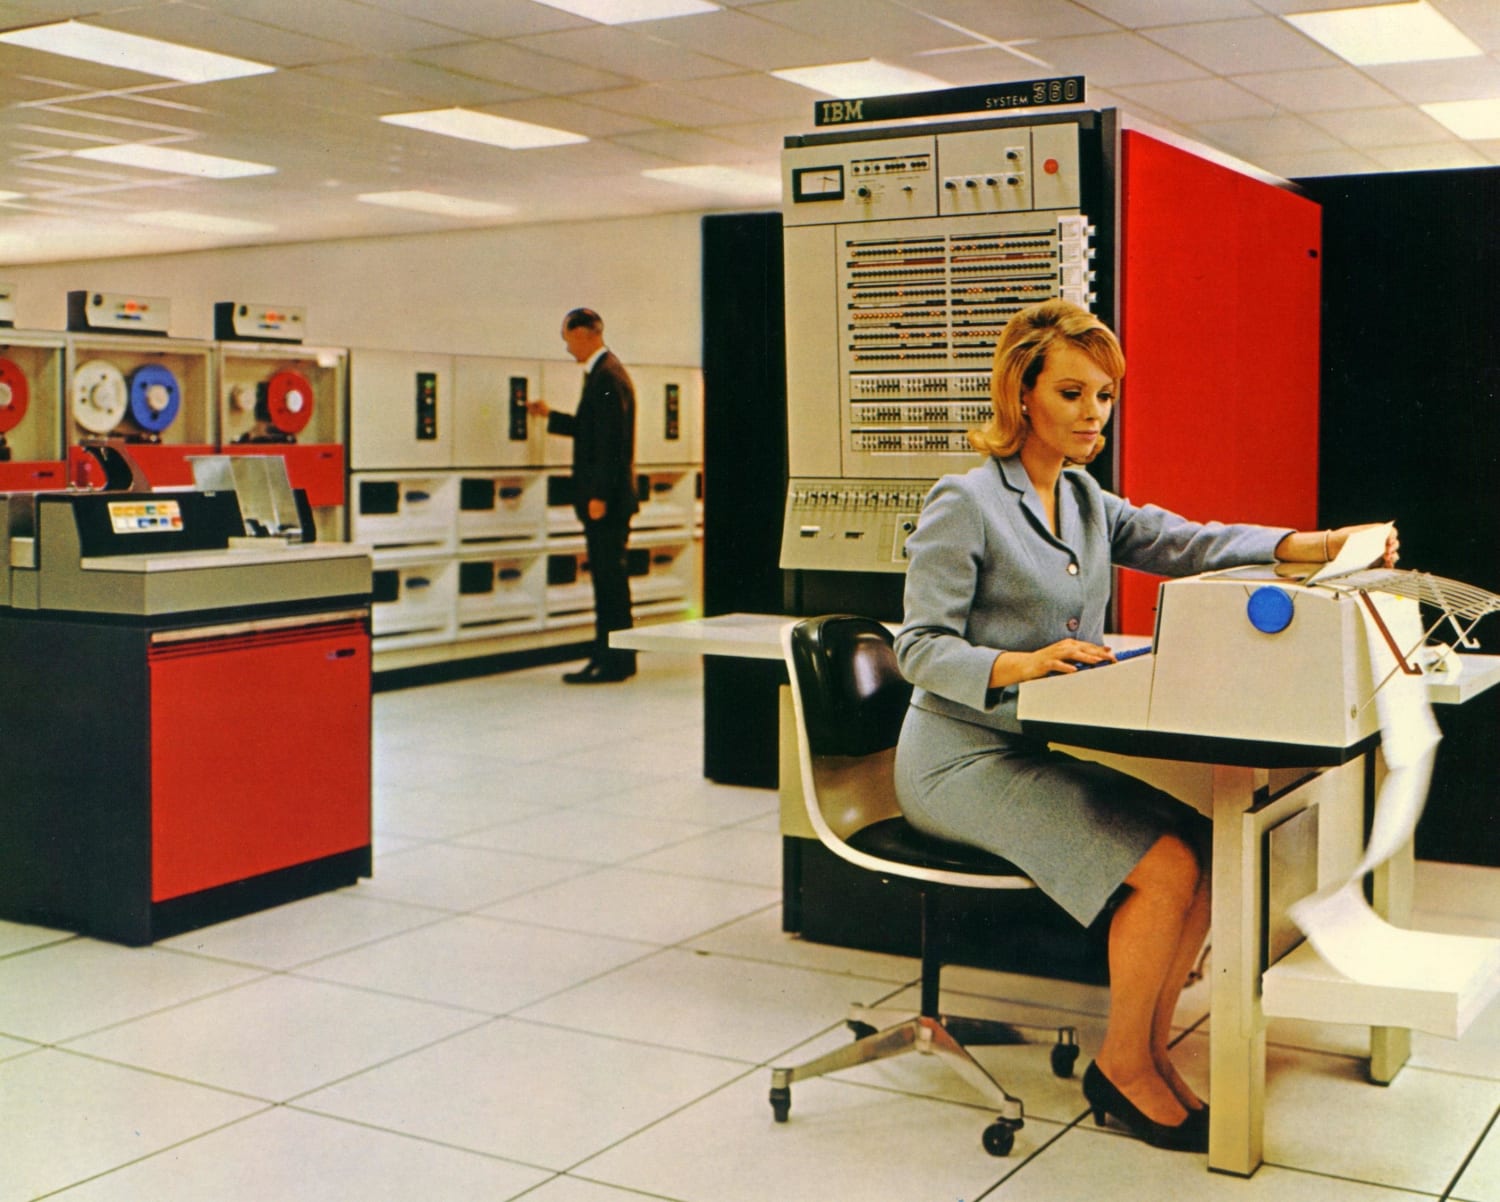 В помещениях оборудованных эвм. Компьютер IBM System/360. Компьютер класса мэйнфрейм IBM System/360. IBM 360 (System 360). IBM System/360 1964.